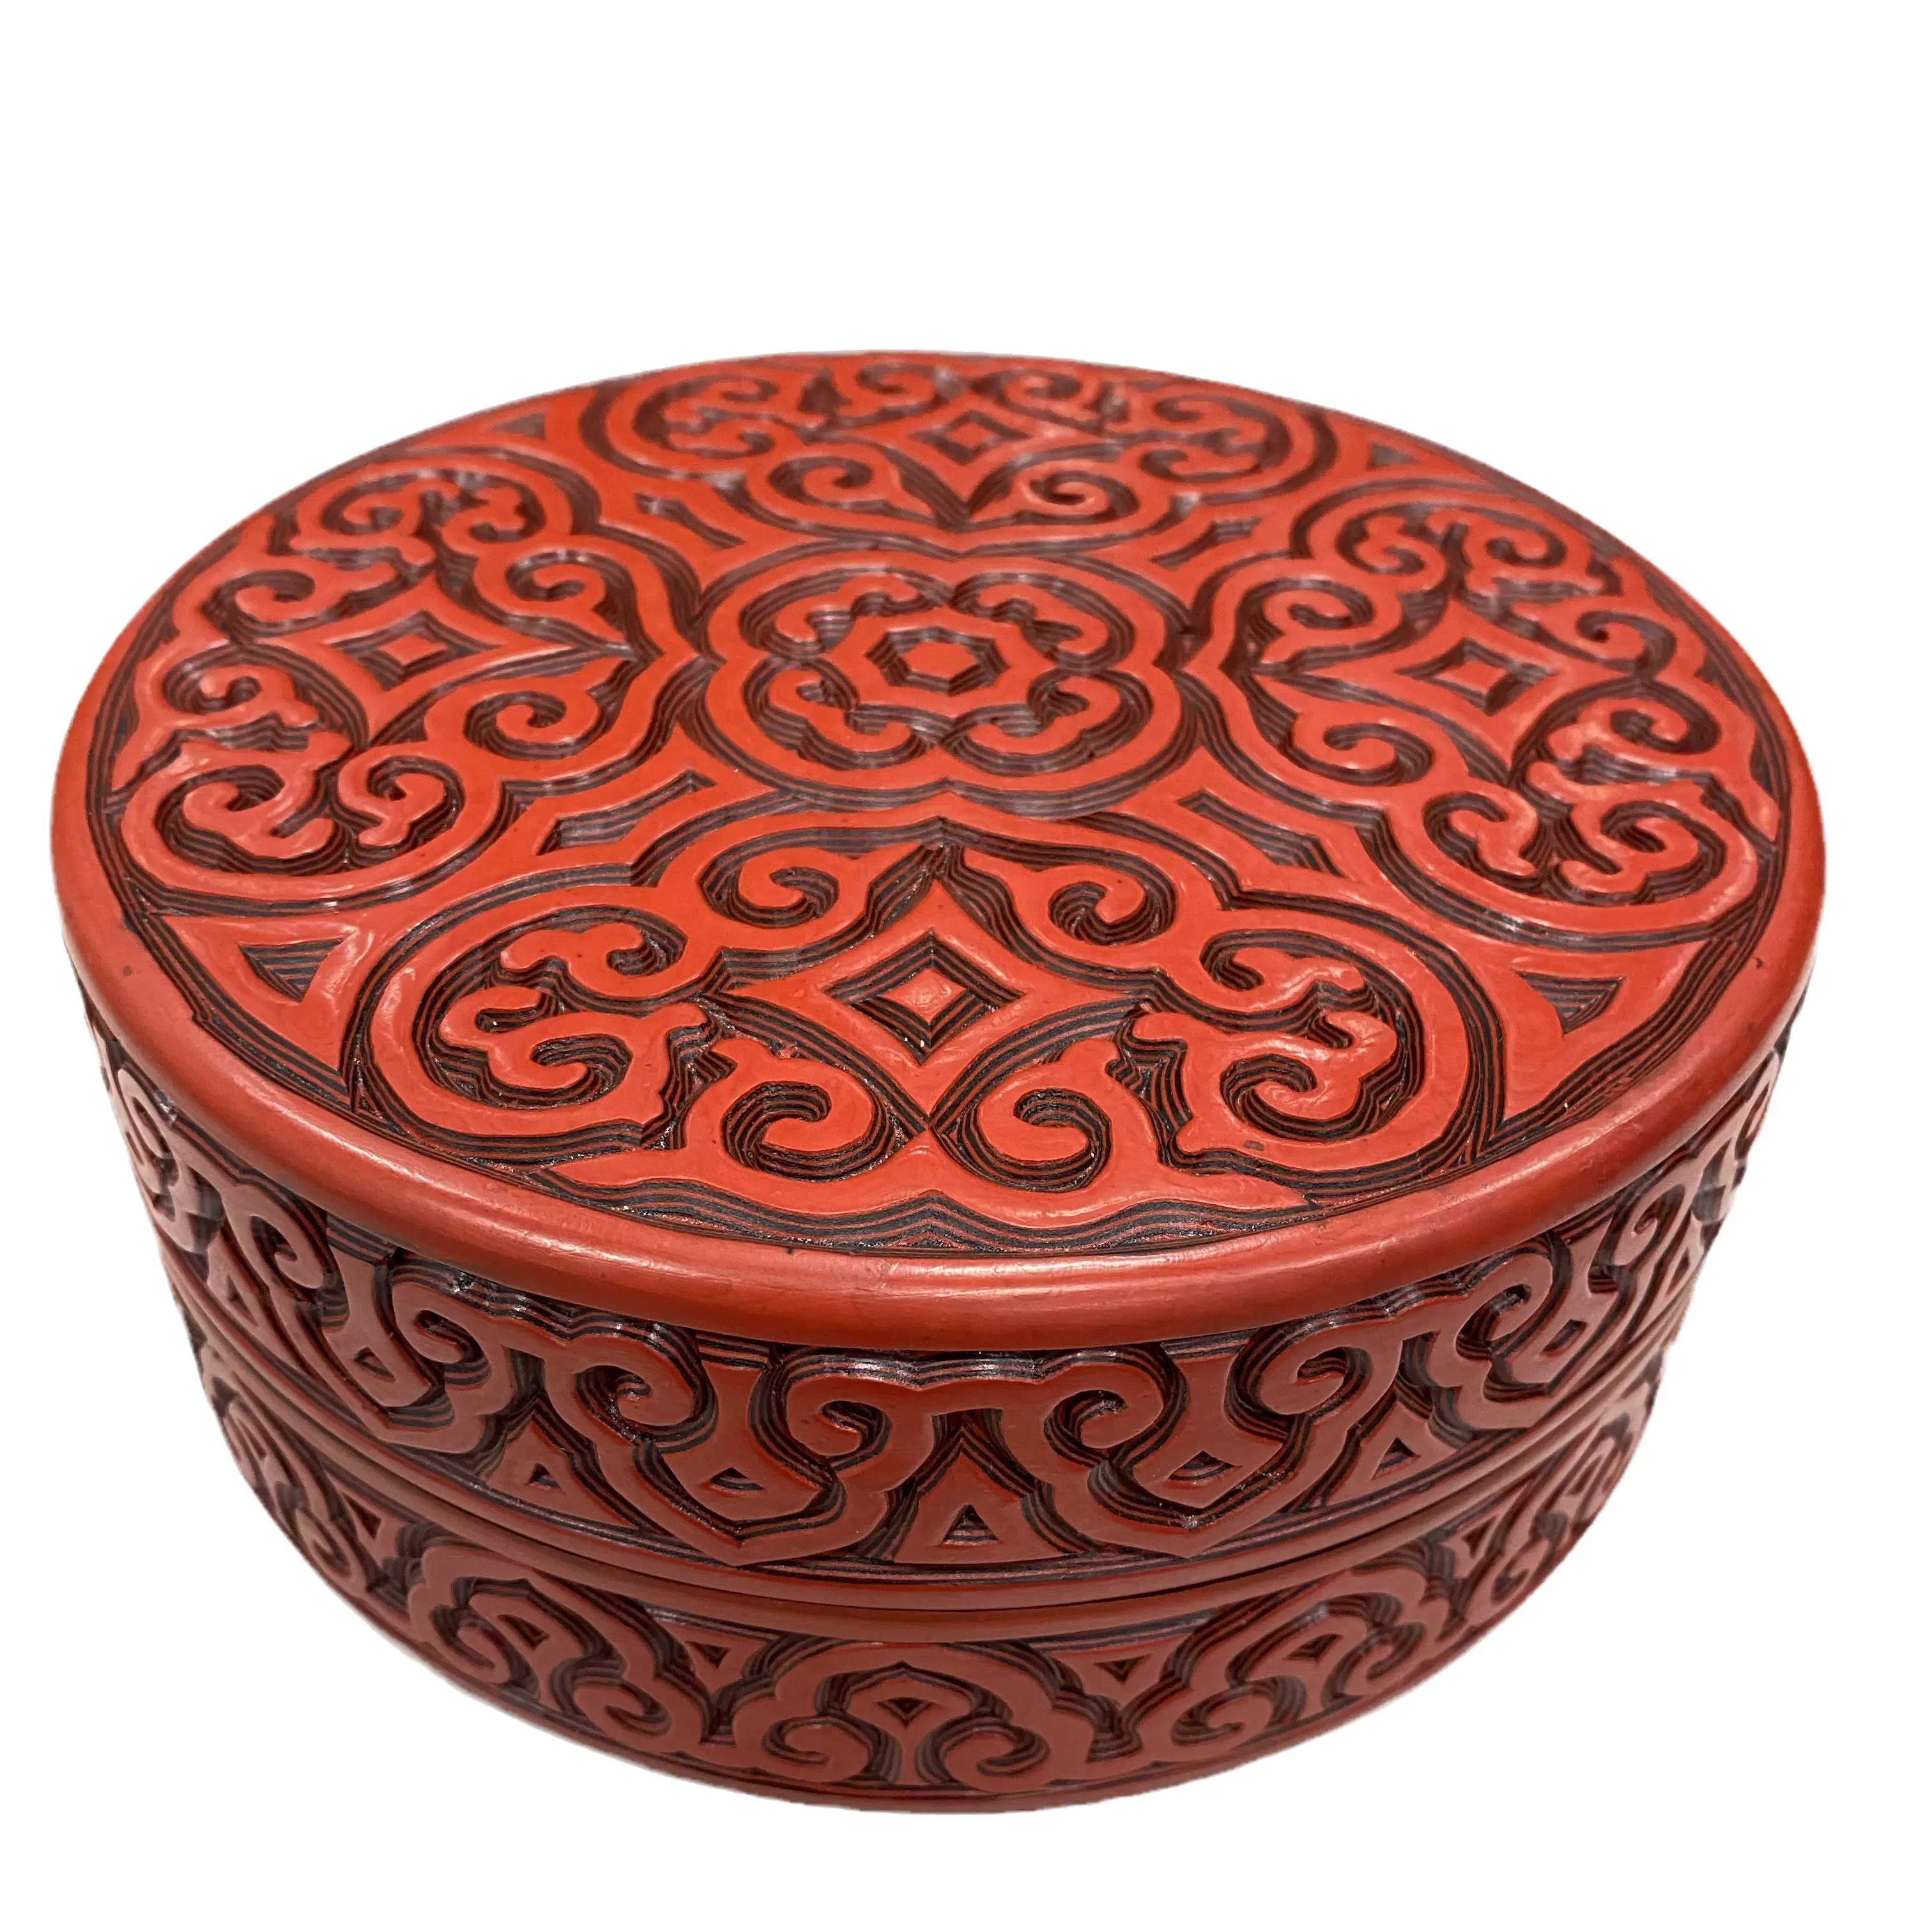 雕漆剔紅漆器純手工大漆木胎捧盒剔犀雲雕首飾盒中國特色傳統工藝-Taobao